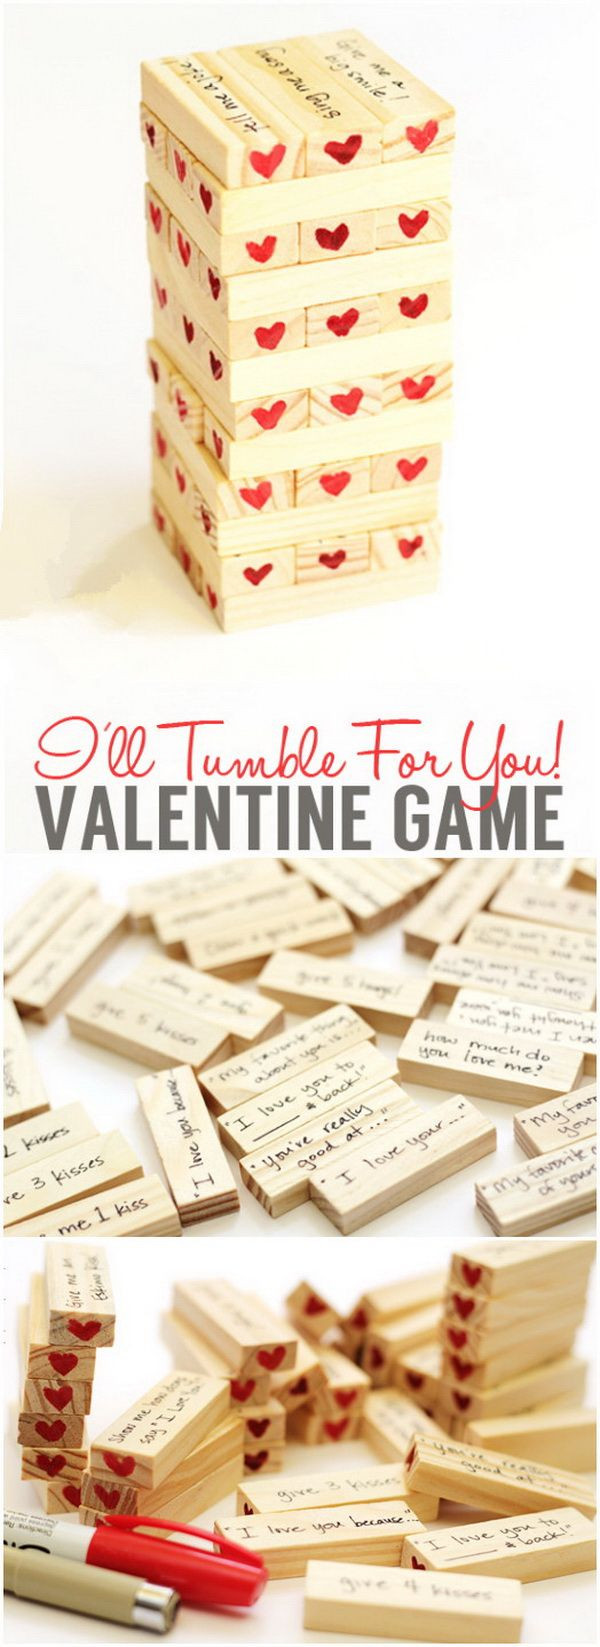 Valentine Day Boyfriend Gift Ideas
 Easy DIY Valentine s Day Gifts for Boyfriend